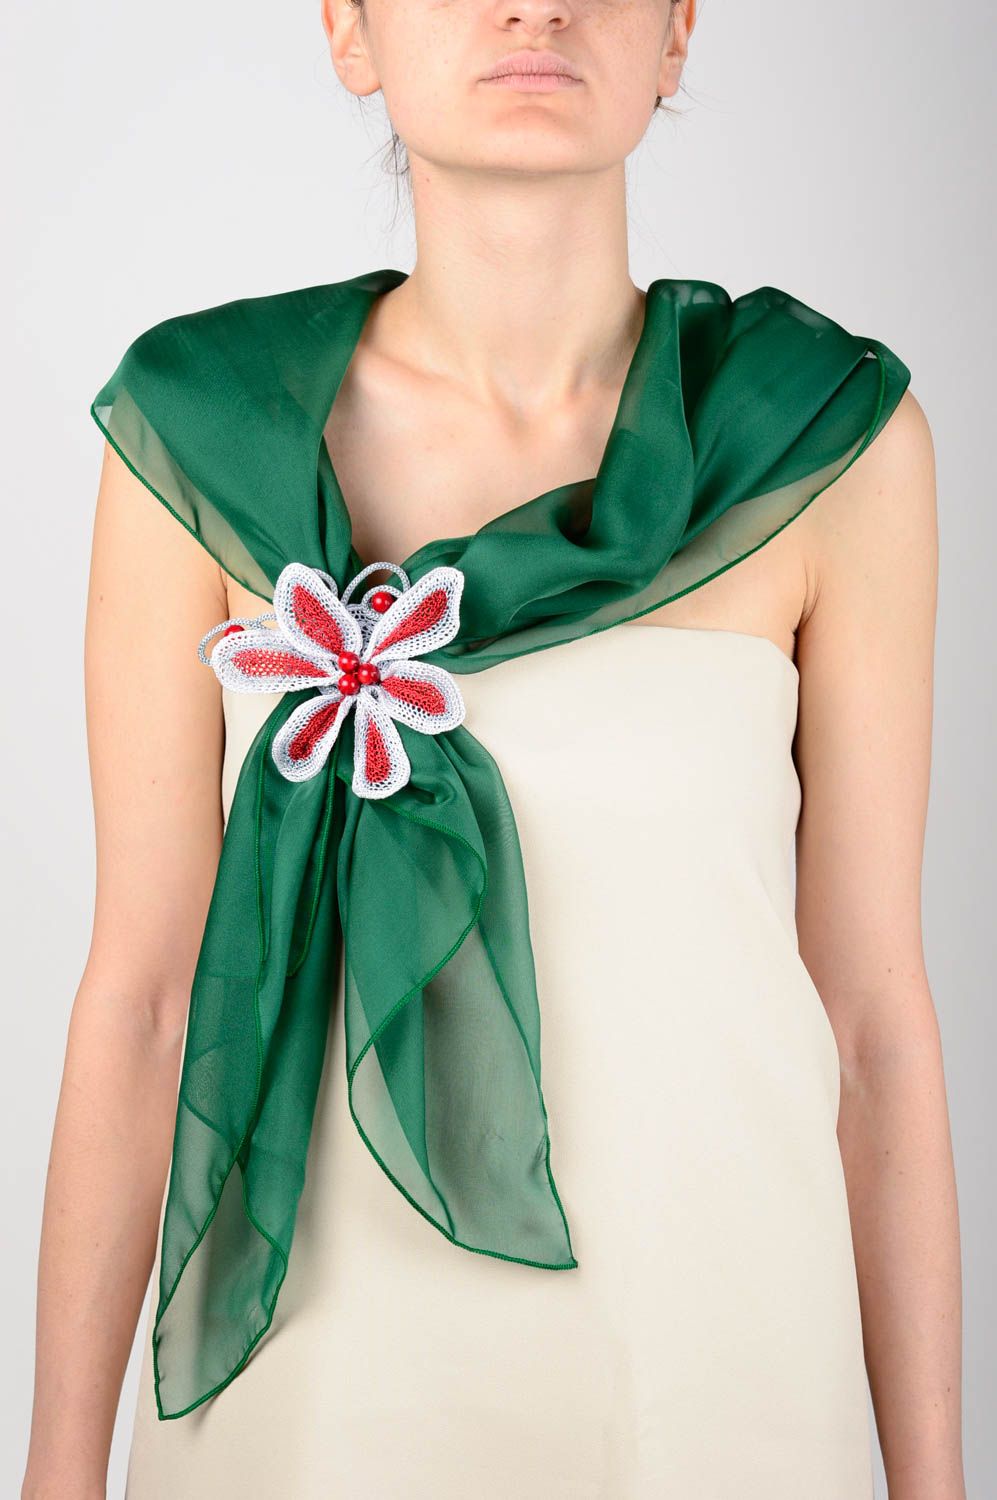 Шарф ожерелье зеленый шарф ручной работы трикотажный шарф оригинальный фото 5